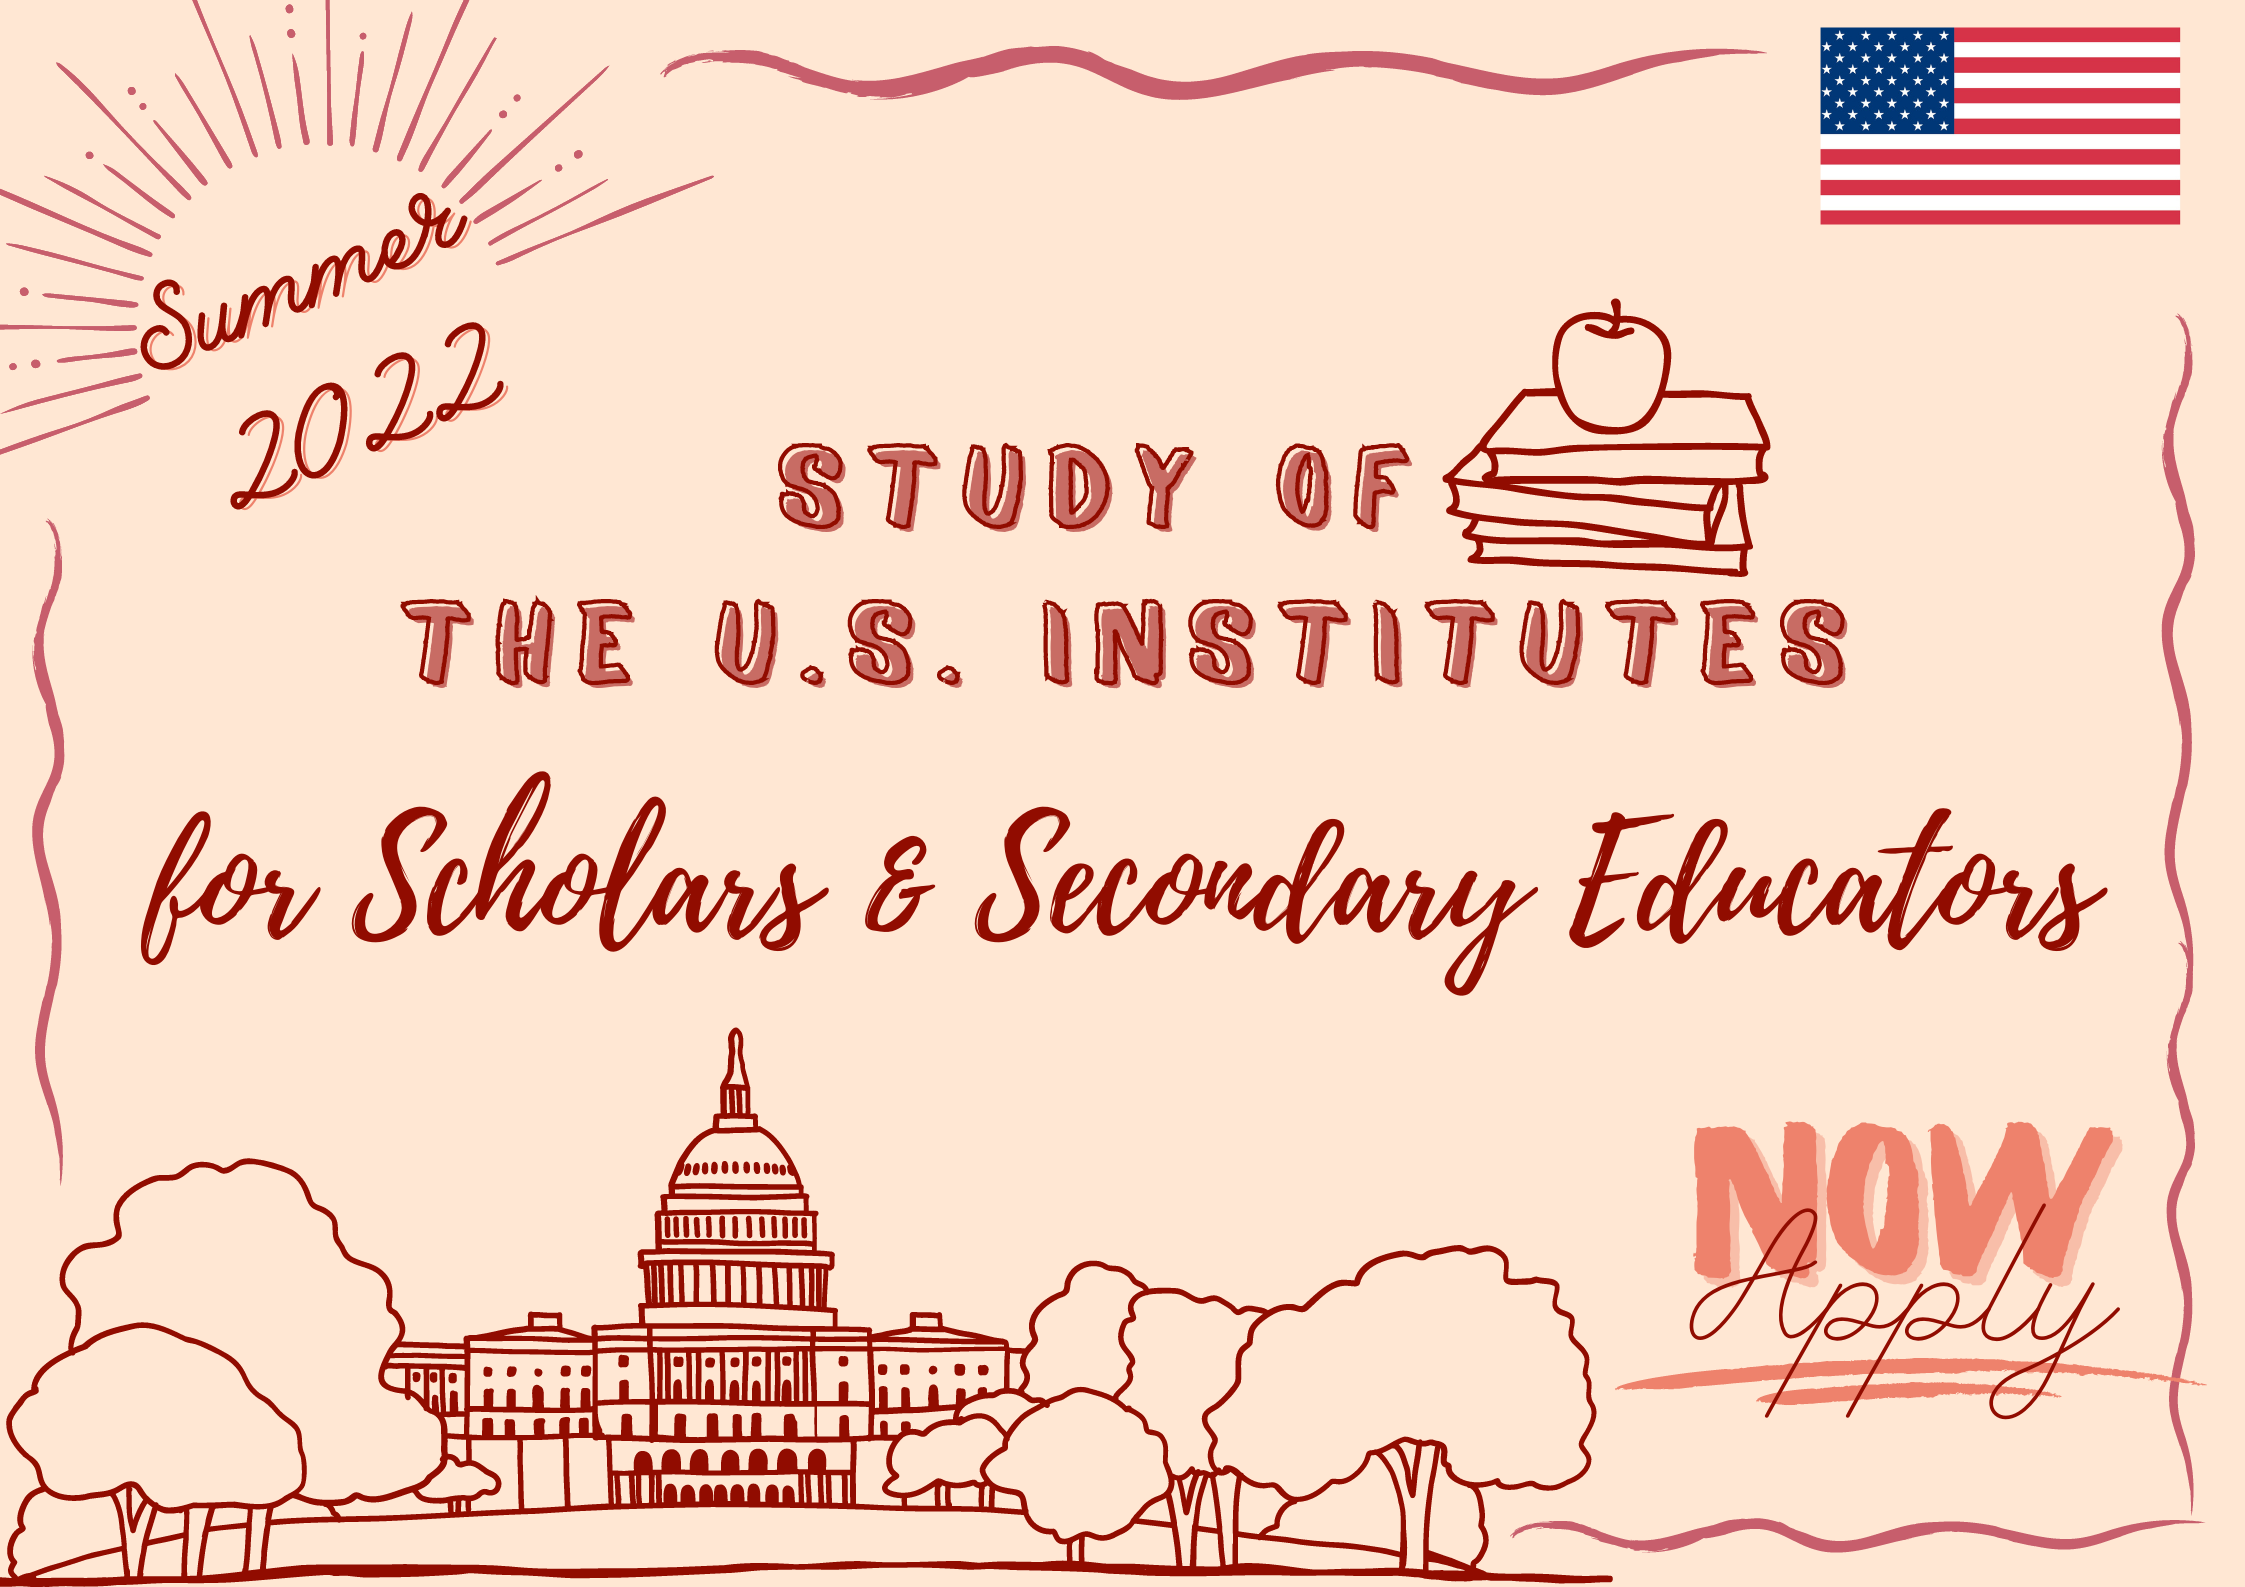 [HTQT] Thông báo chương trình Nghiên cứu Hoa Kỳ dành cho học giả và chuyên gia giáo dục phổ thông mùa hè năm 2022